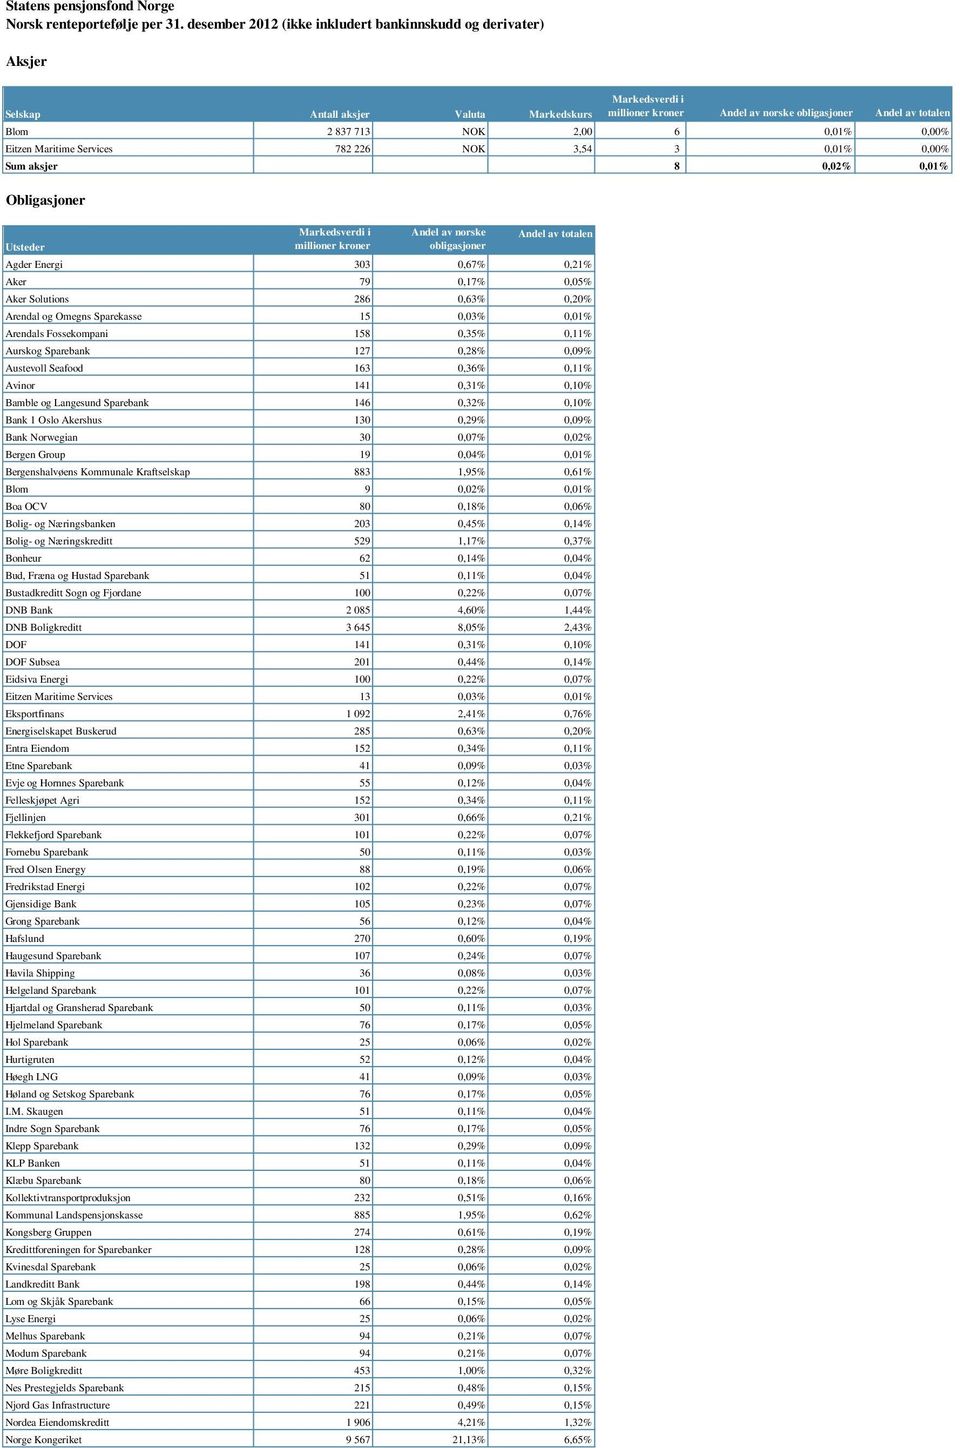 226 NOK 3,54 3 0,01% 0,00% Sum aksjer 8 0,02% 0,01% Obligasjoner Utsteder norske obligasjoner totalen Agder Energi 303 0,67% 0,21% Aker 79 0,17% 0,05% Aker Solutions 286 0,63% 0,20% Arendal og Omegns